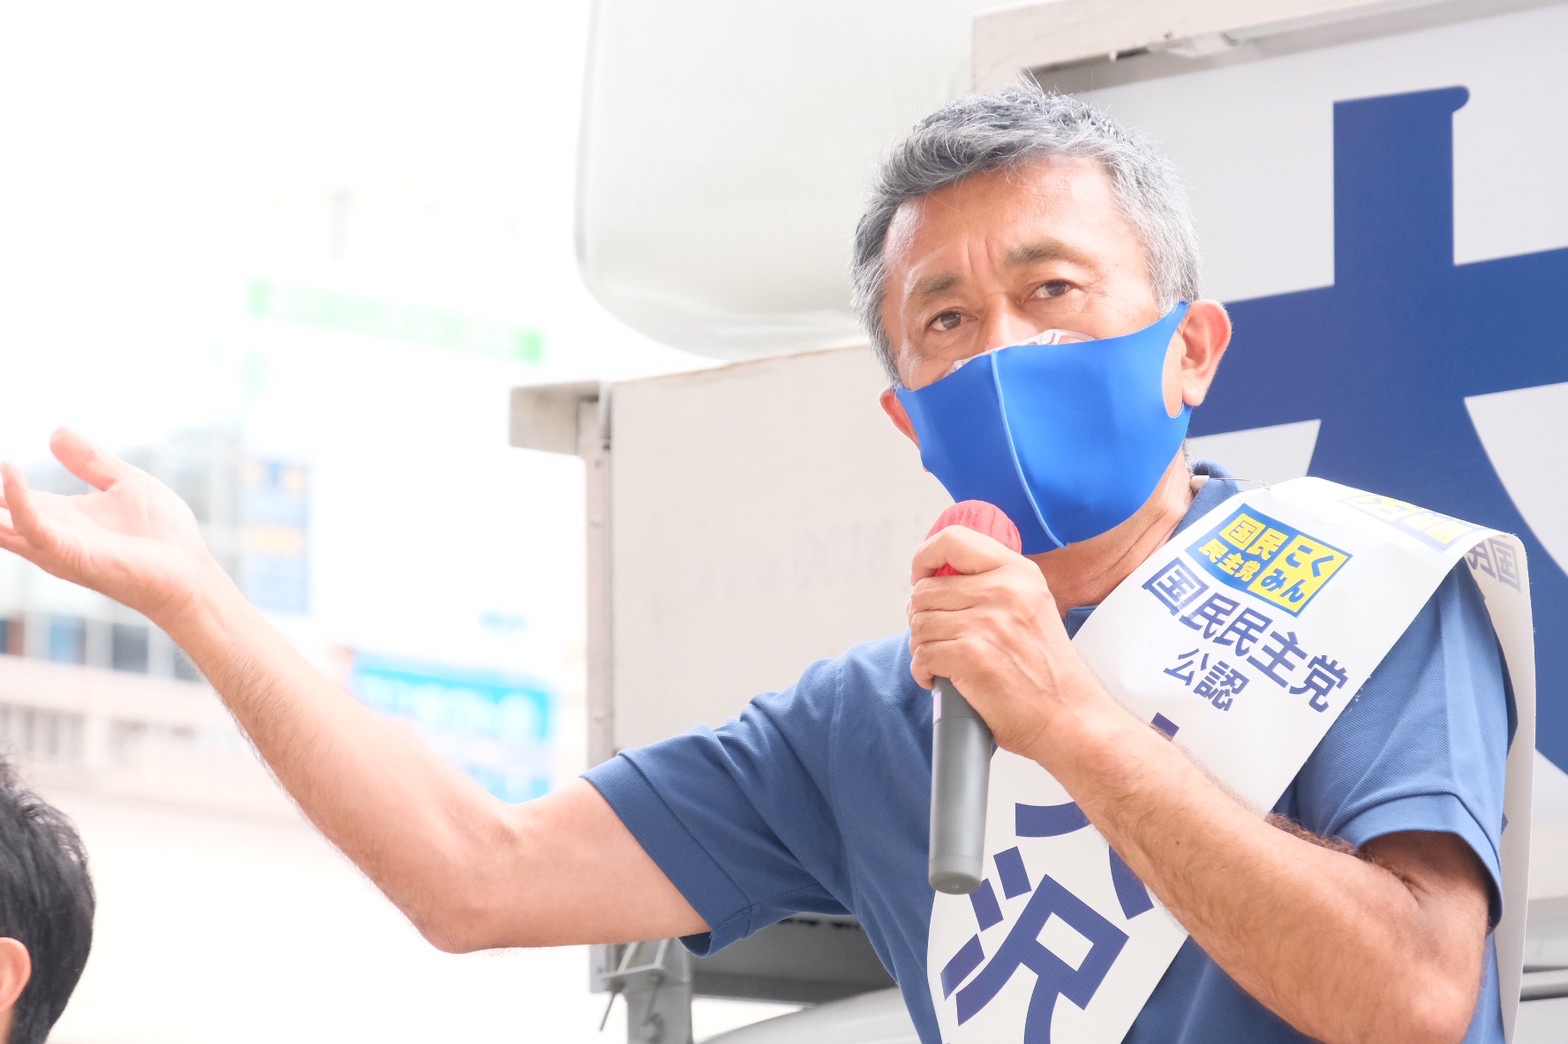 【都議選】墨田区・大沢のぼる候補「暮らしを守る政策を実現していく」と最後の訴え